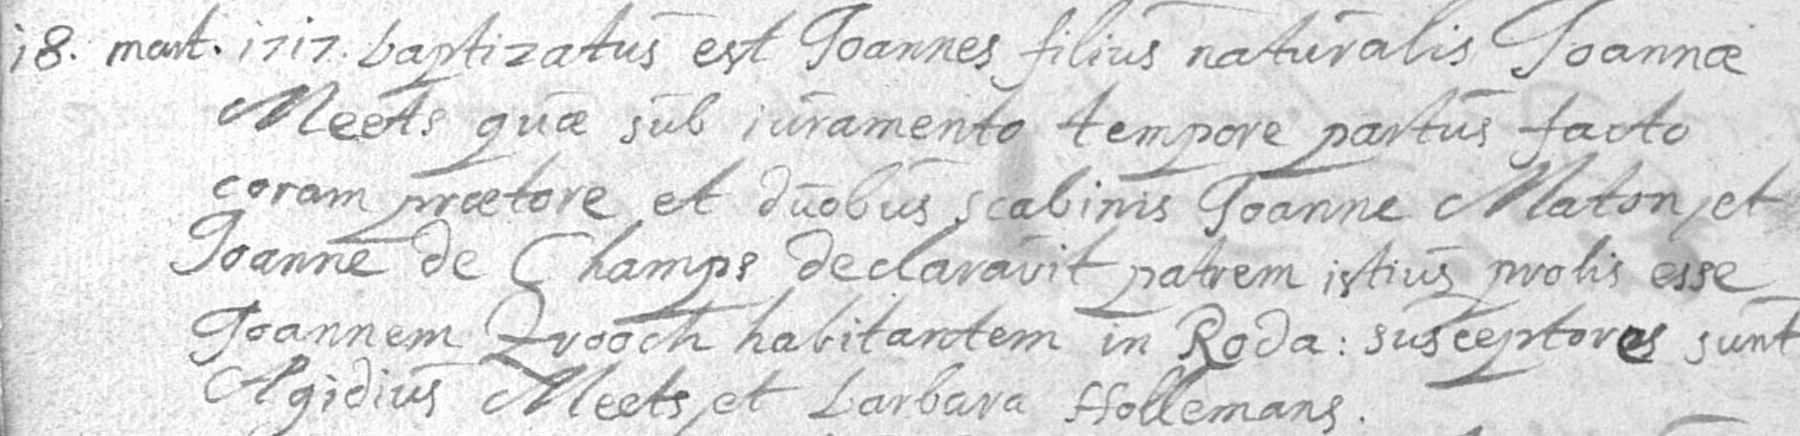 1717-JoannesMeerts18Mar1717NatuurlijkkindJoannaMeerts.jpg